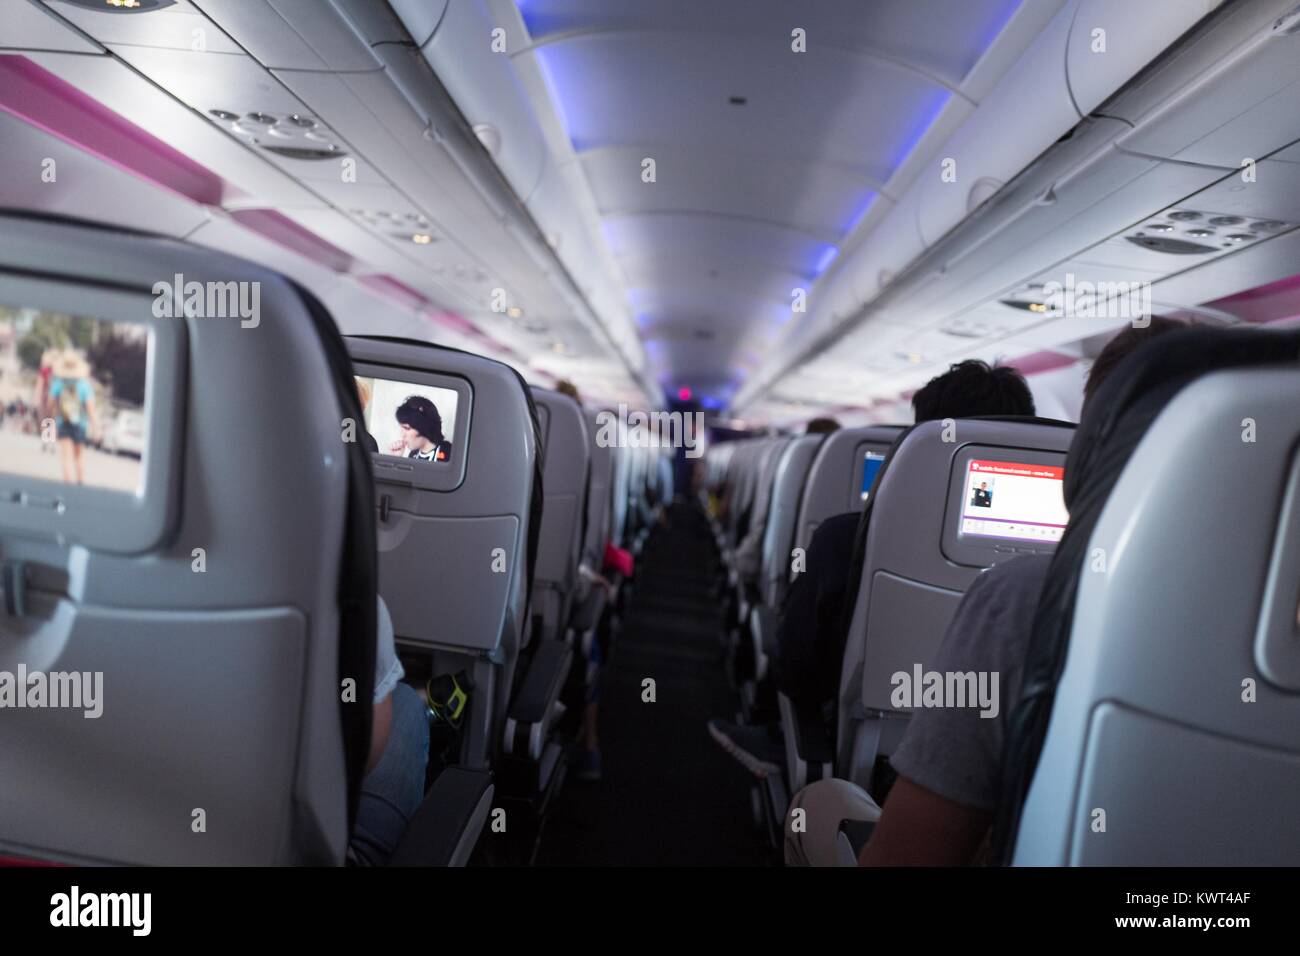 Blick auf den Gang der Coach class Abschnitt eines Virgin America Flugzeug im Flug, mit In-flight Entertainment Konsolen auf Rückenlehnen sichtbar, 13. September 2017. Stockfoto